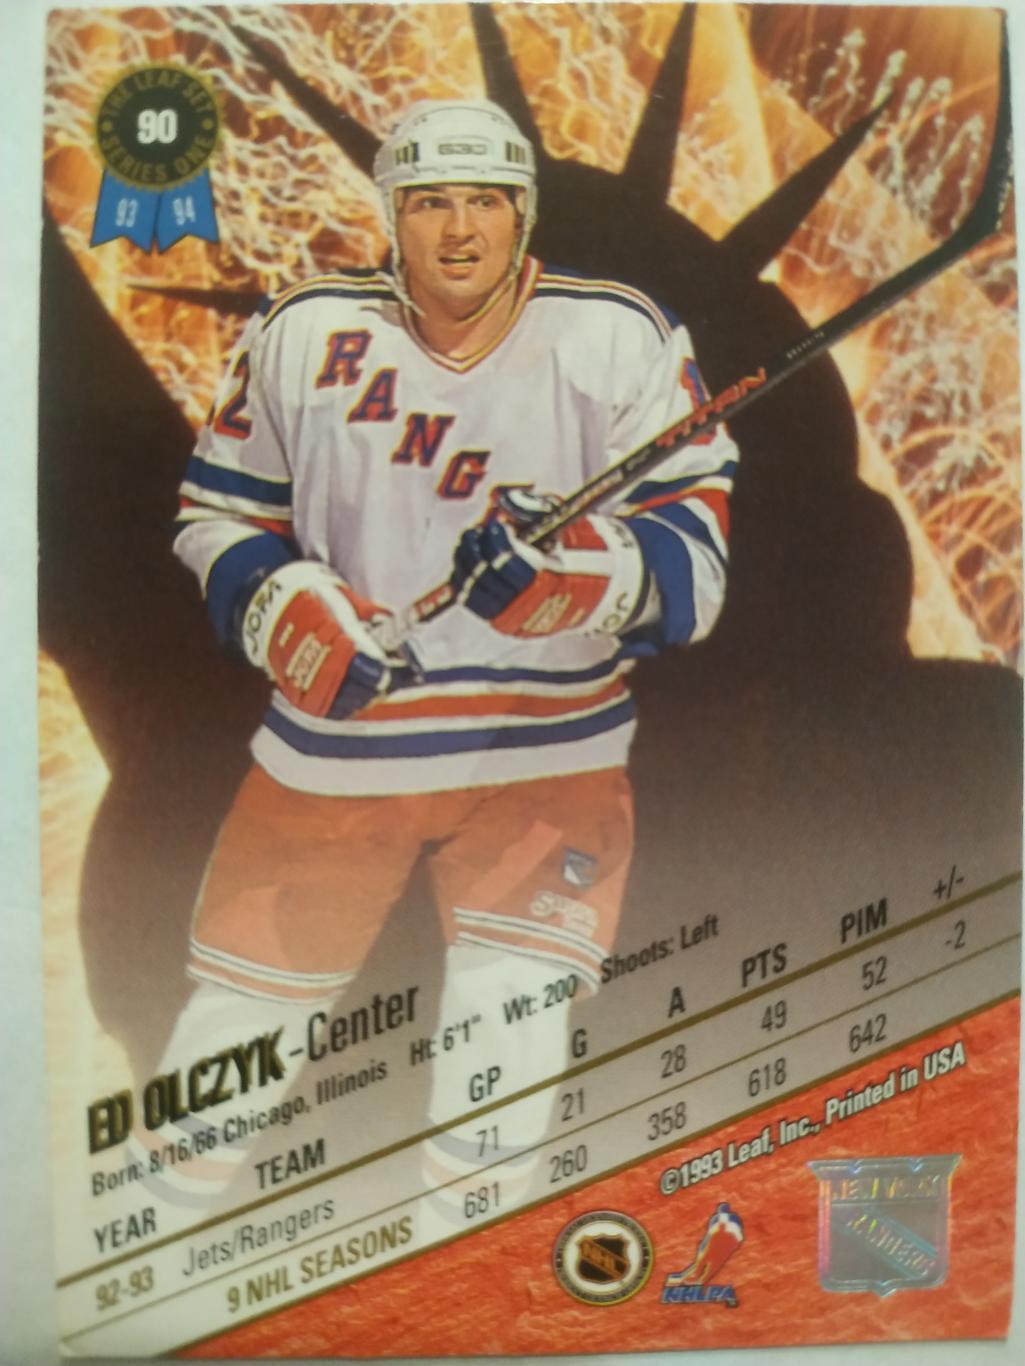 ХОККЕЙ КАРТОЧКА НХЛ LEAF SET SERIES ONE 1993-94 ED OLCZYK NEW YORK RANGERS #90 1